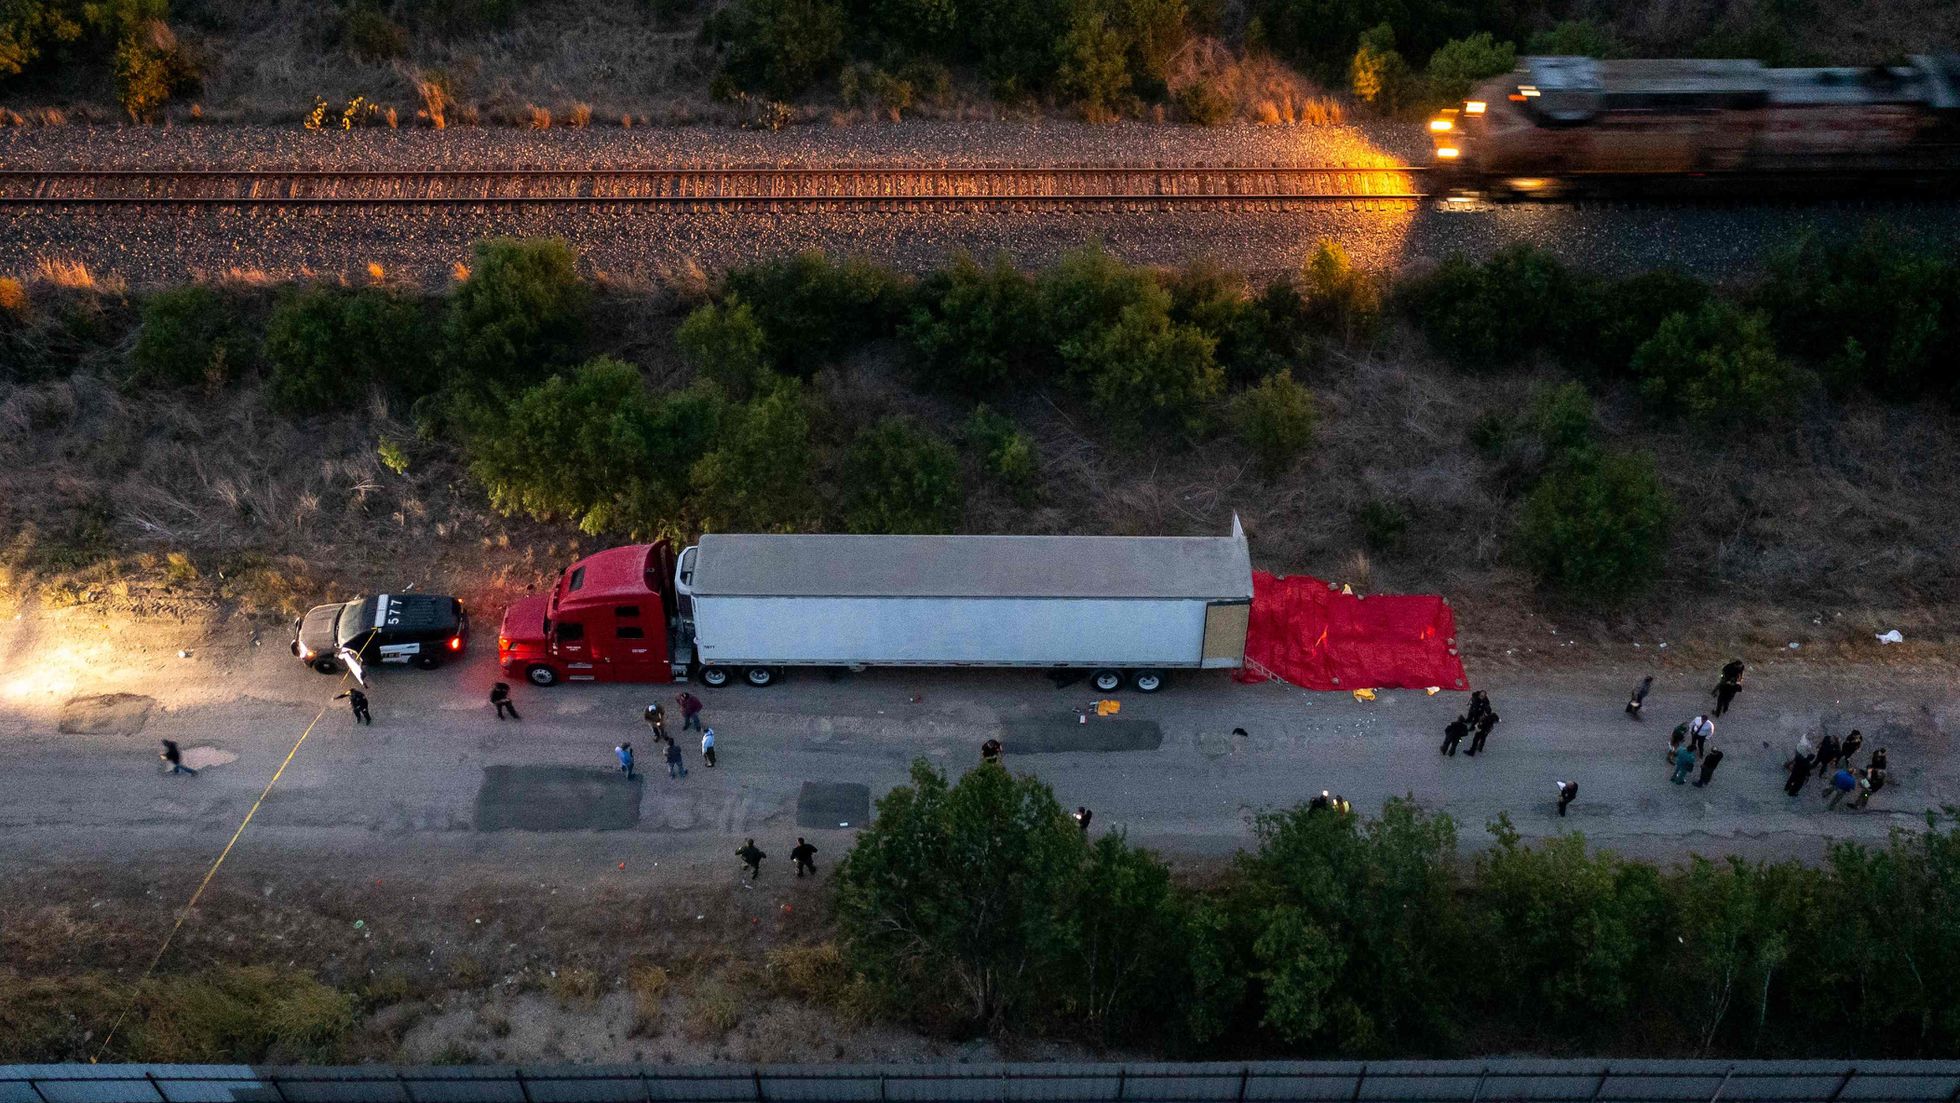 50 migrantes que buscaban mejor vida en EEUU mueren asfixiados tras ser abandonados en camión